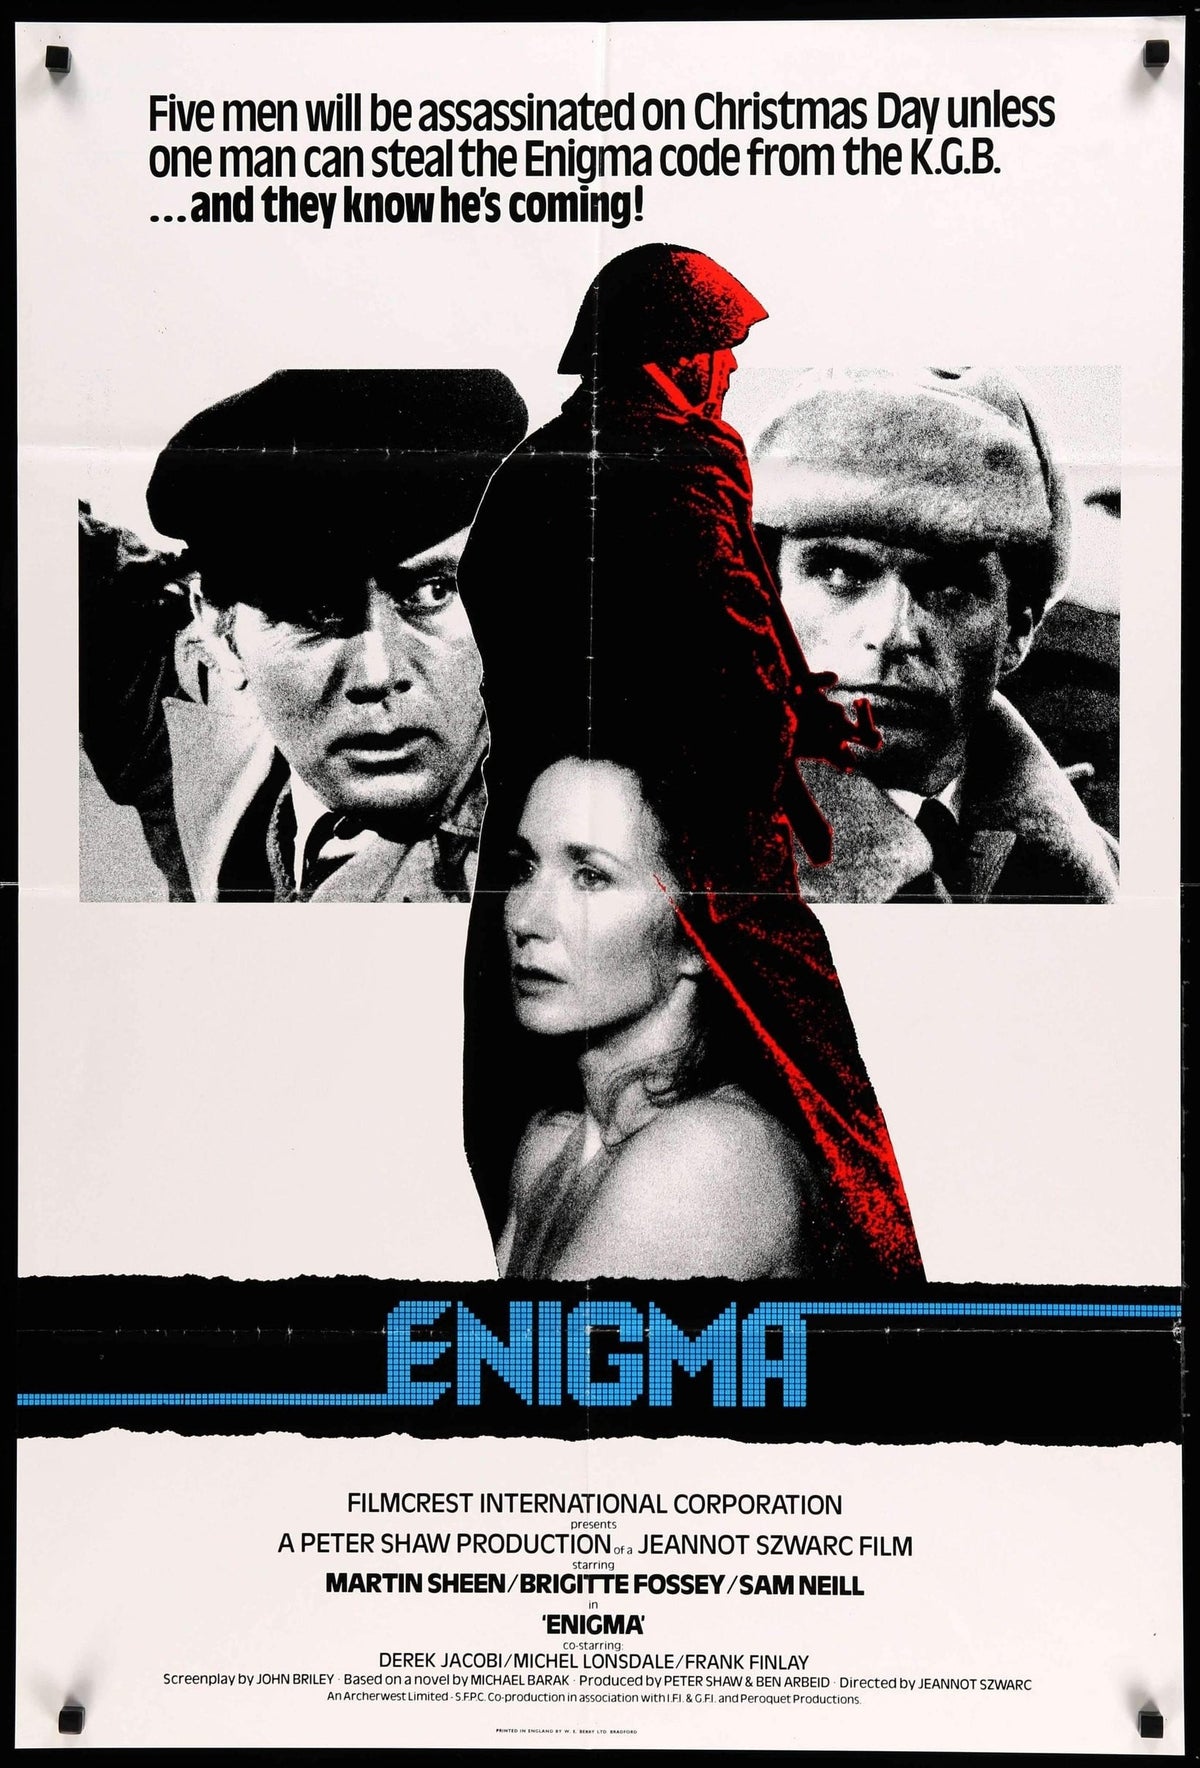 Enigma (1982) original movie poster for sale at Original Film Art